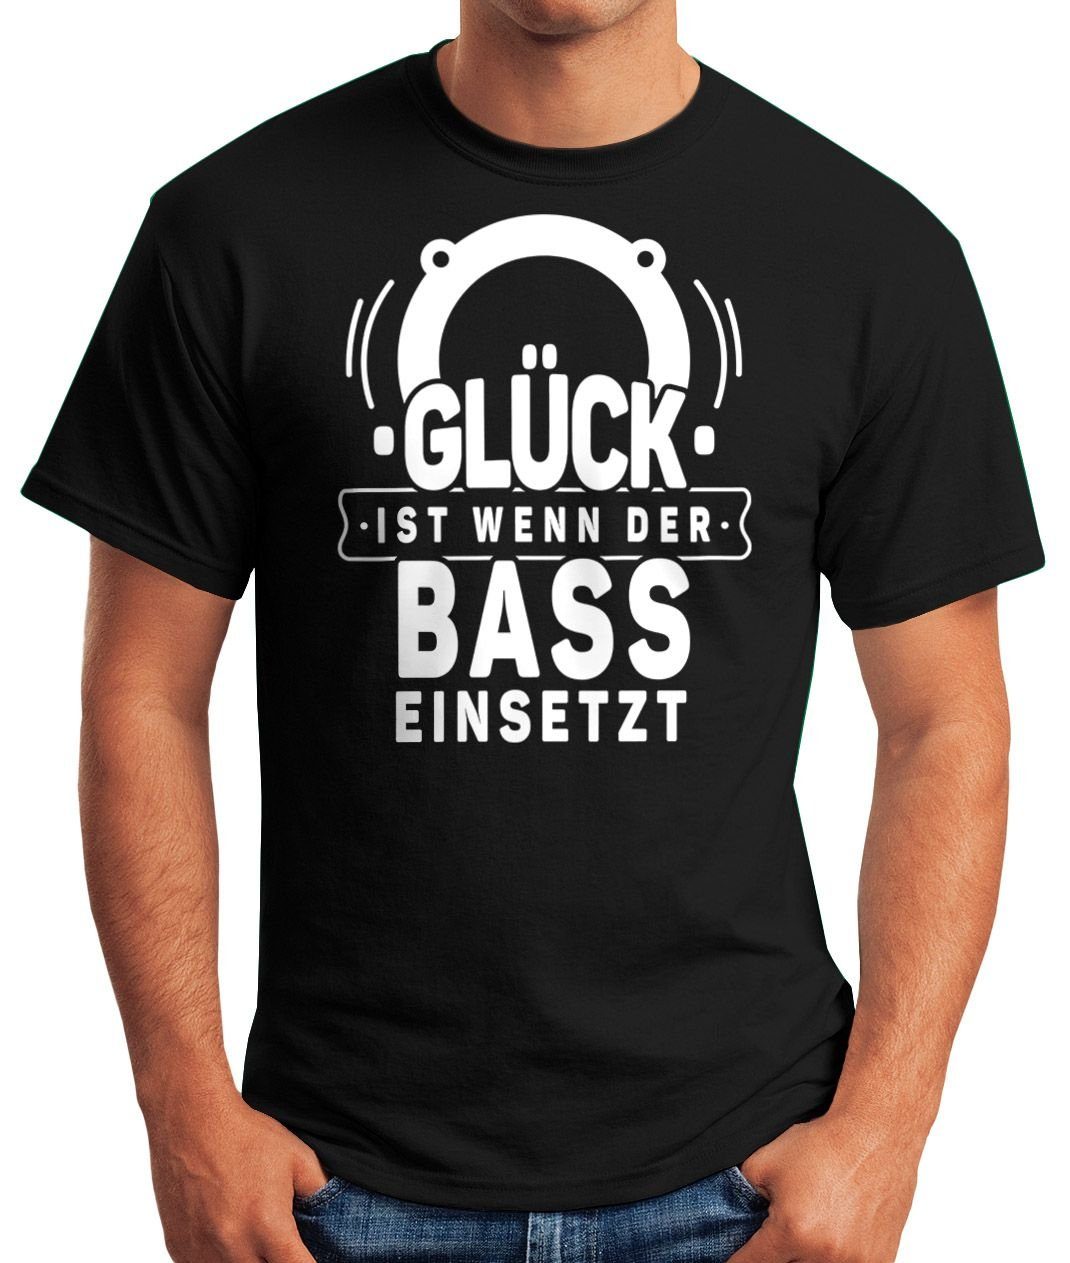 mit wenn Glück Moonworks® Festival Rave Bass ist T-Shirt Herren Techno Oberteil Print-Shirt Motiv der einsetzt Party Print Spruch MoonWorks Fun-Shirt